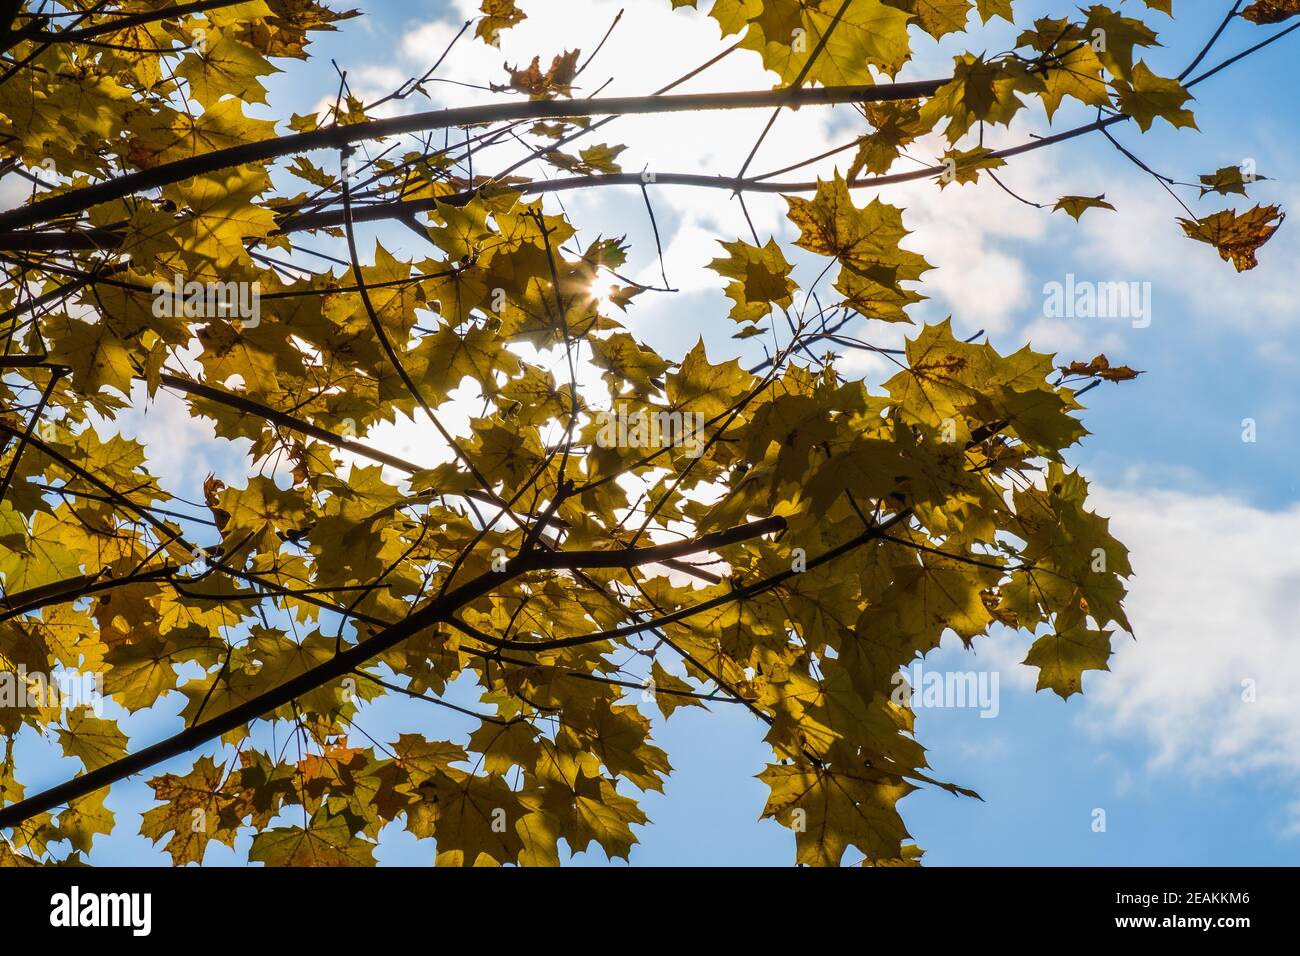 Yellow Maple Leaves in Autumn Season in Sunlight Stock Photo